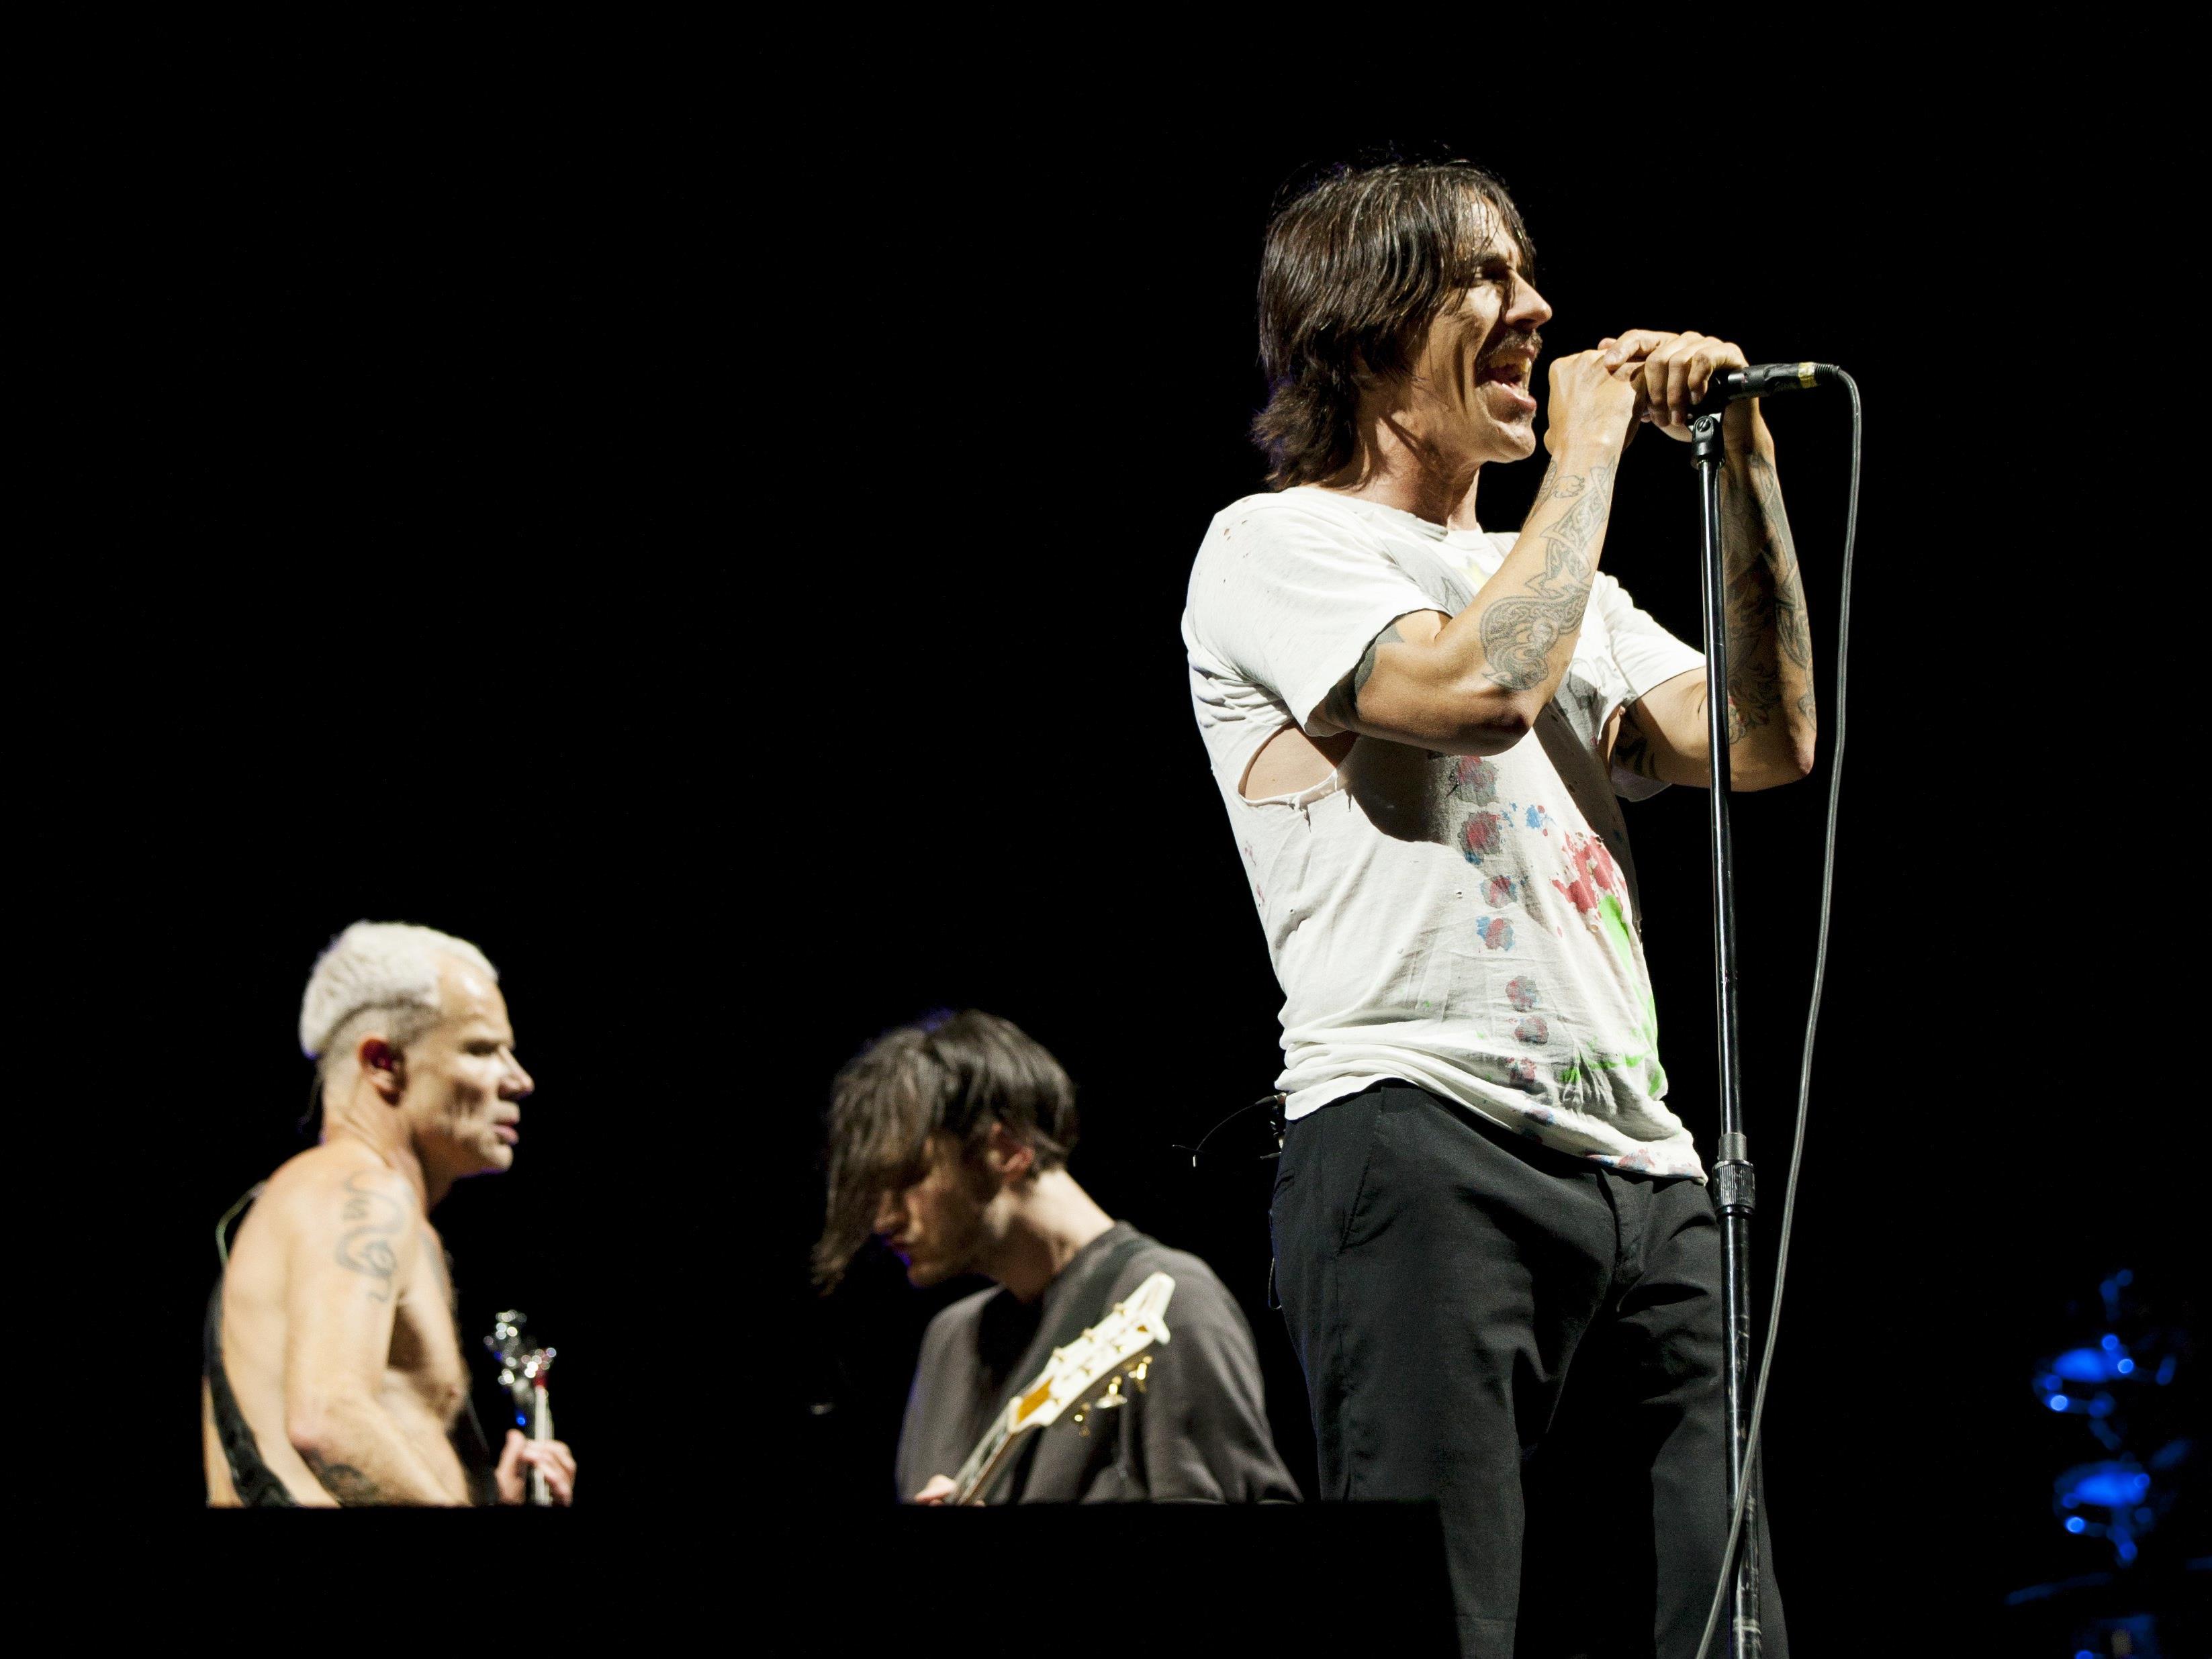 Anthony Kiedis, Frontmann der Red Hot Chilli Peppers ist wieder fit. Nach einer kurzen Pause wegen einer magenentzündung, setze die Band ihre Tour fort.